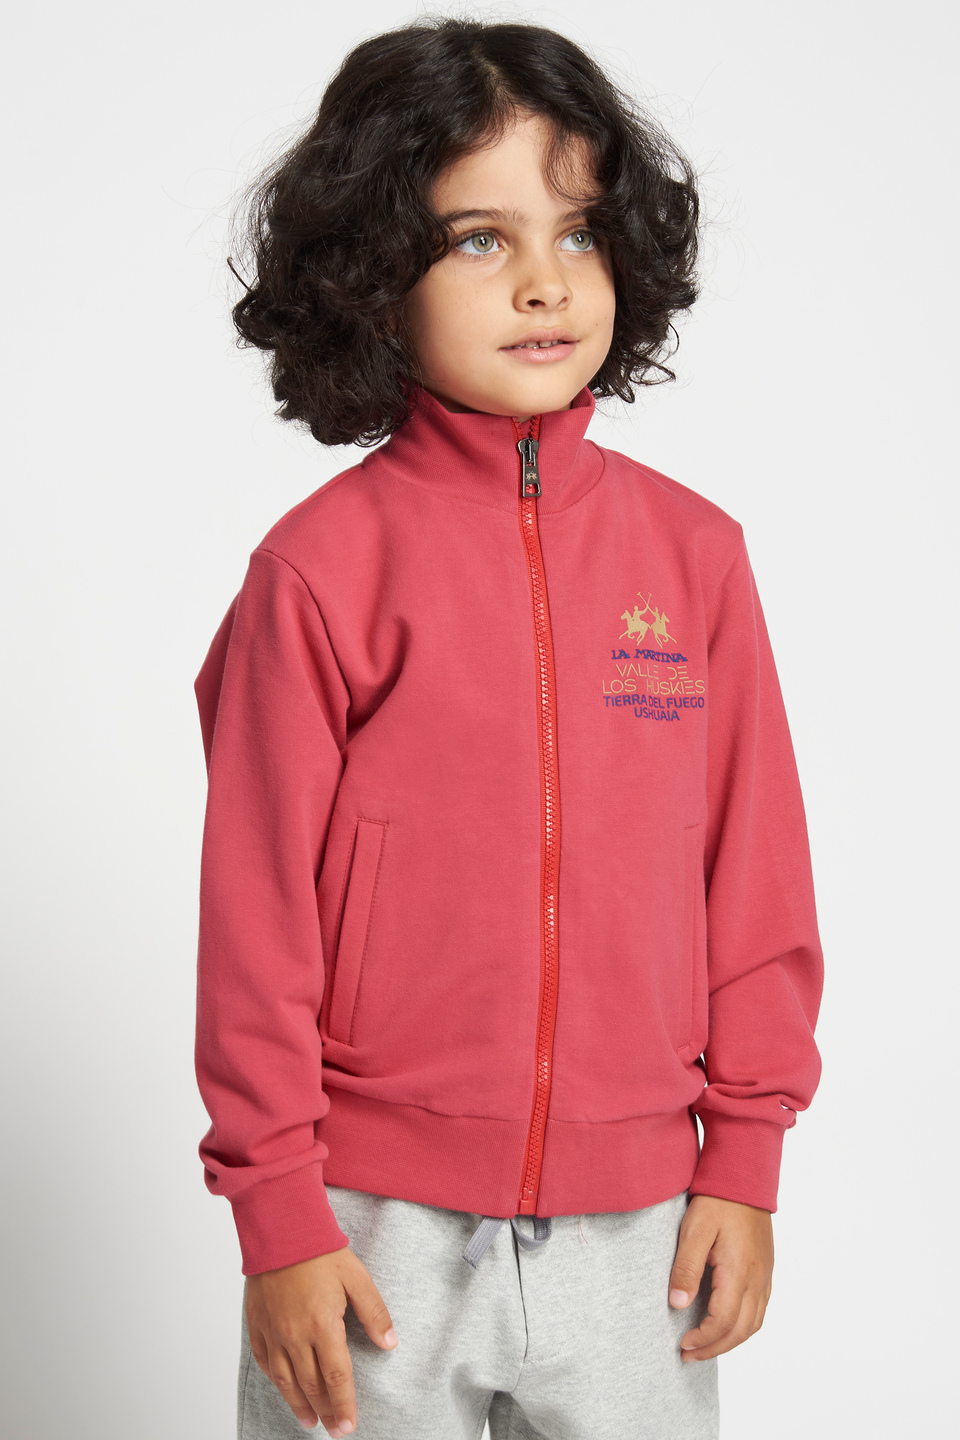 Plain-coloured sweatshirt with a front zip | La Martina - Official Online Shop